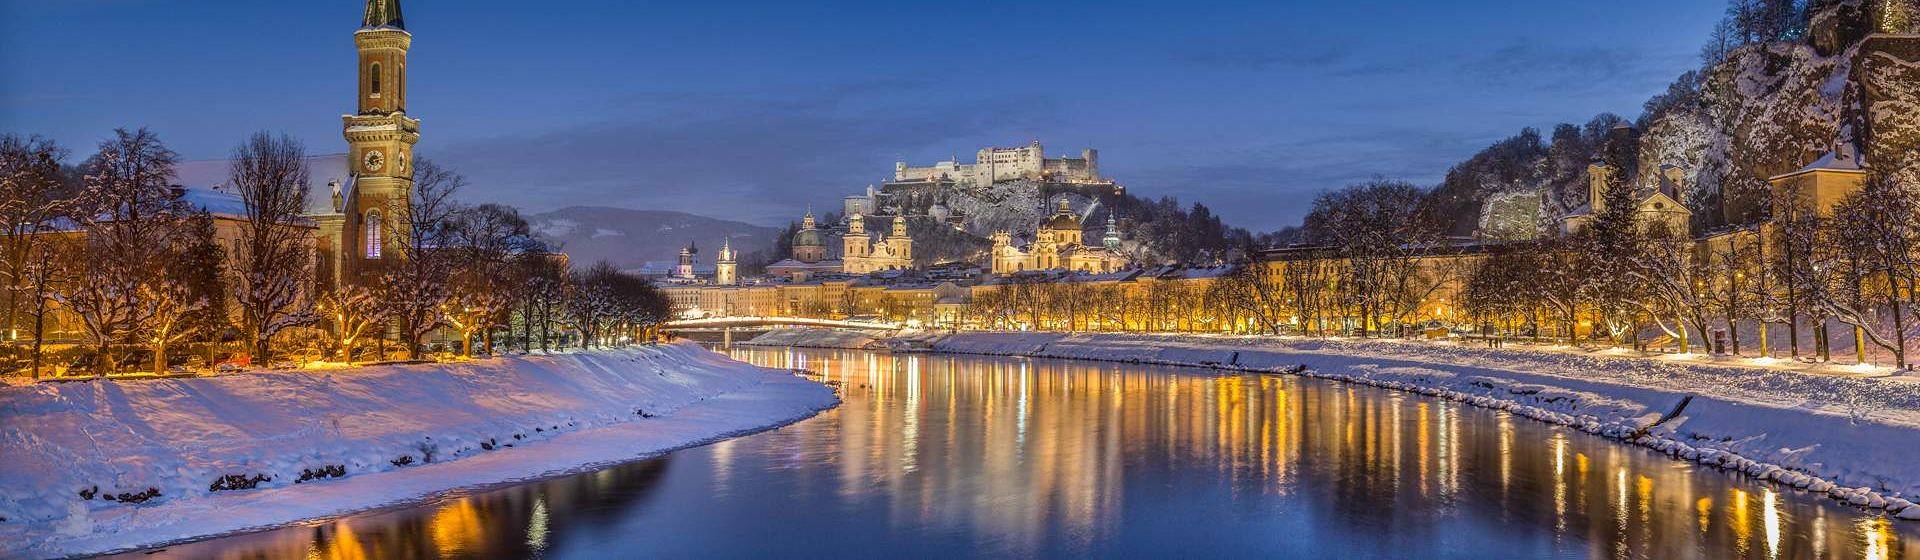 Holidays to Salzburg Image